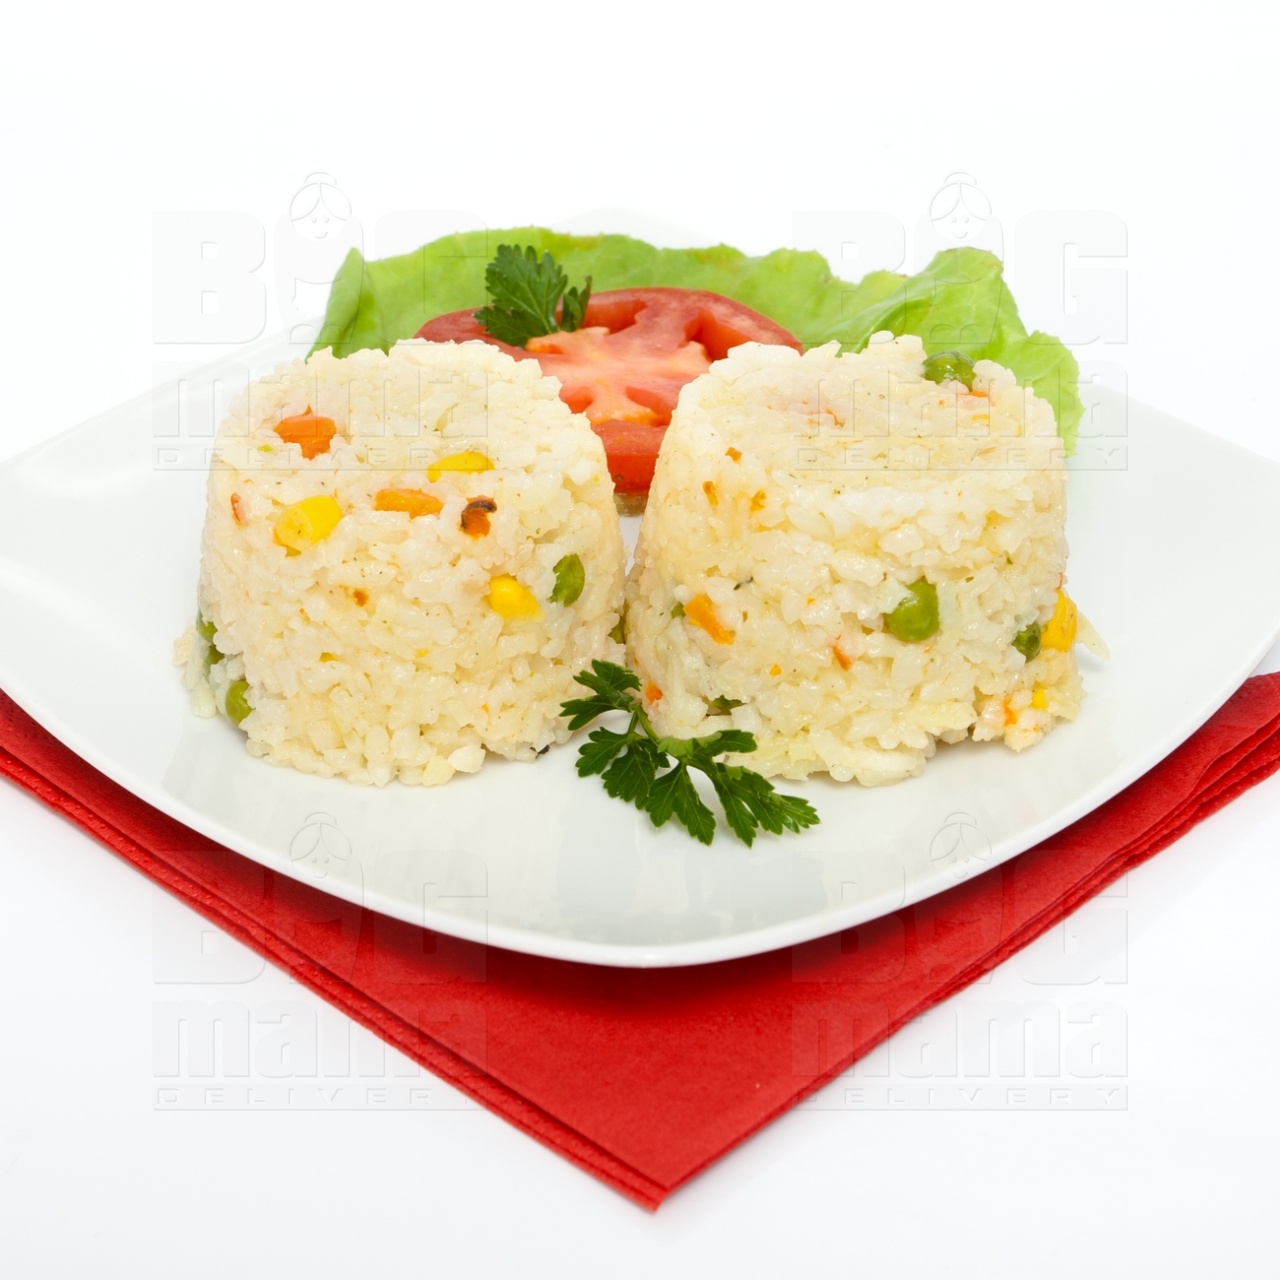 Product #38 image - Zöldséges rizs